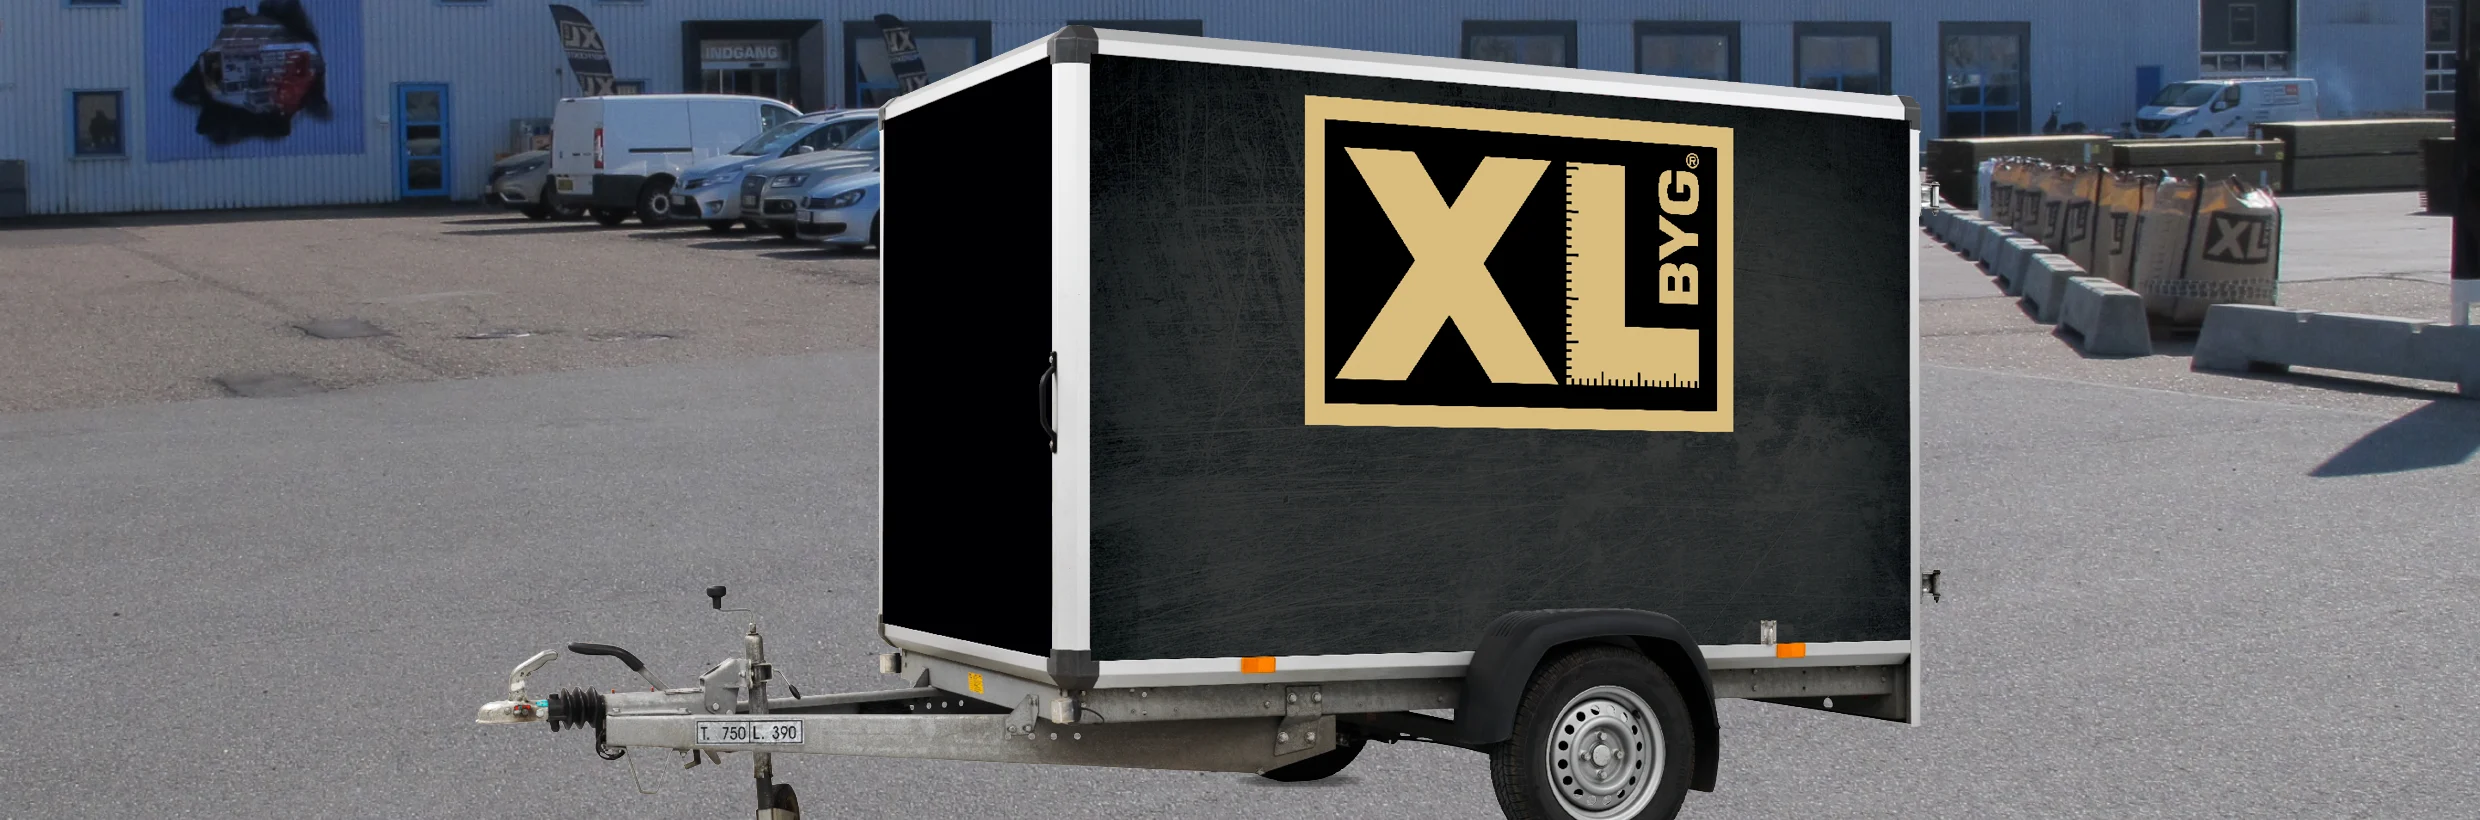 Temerity Skur lastbil Lej en trailer gratis hos XL-BYG ⇒ Se hvordan og find booking her